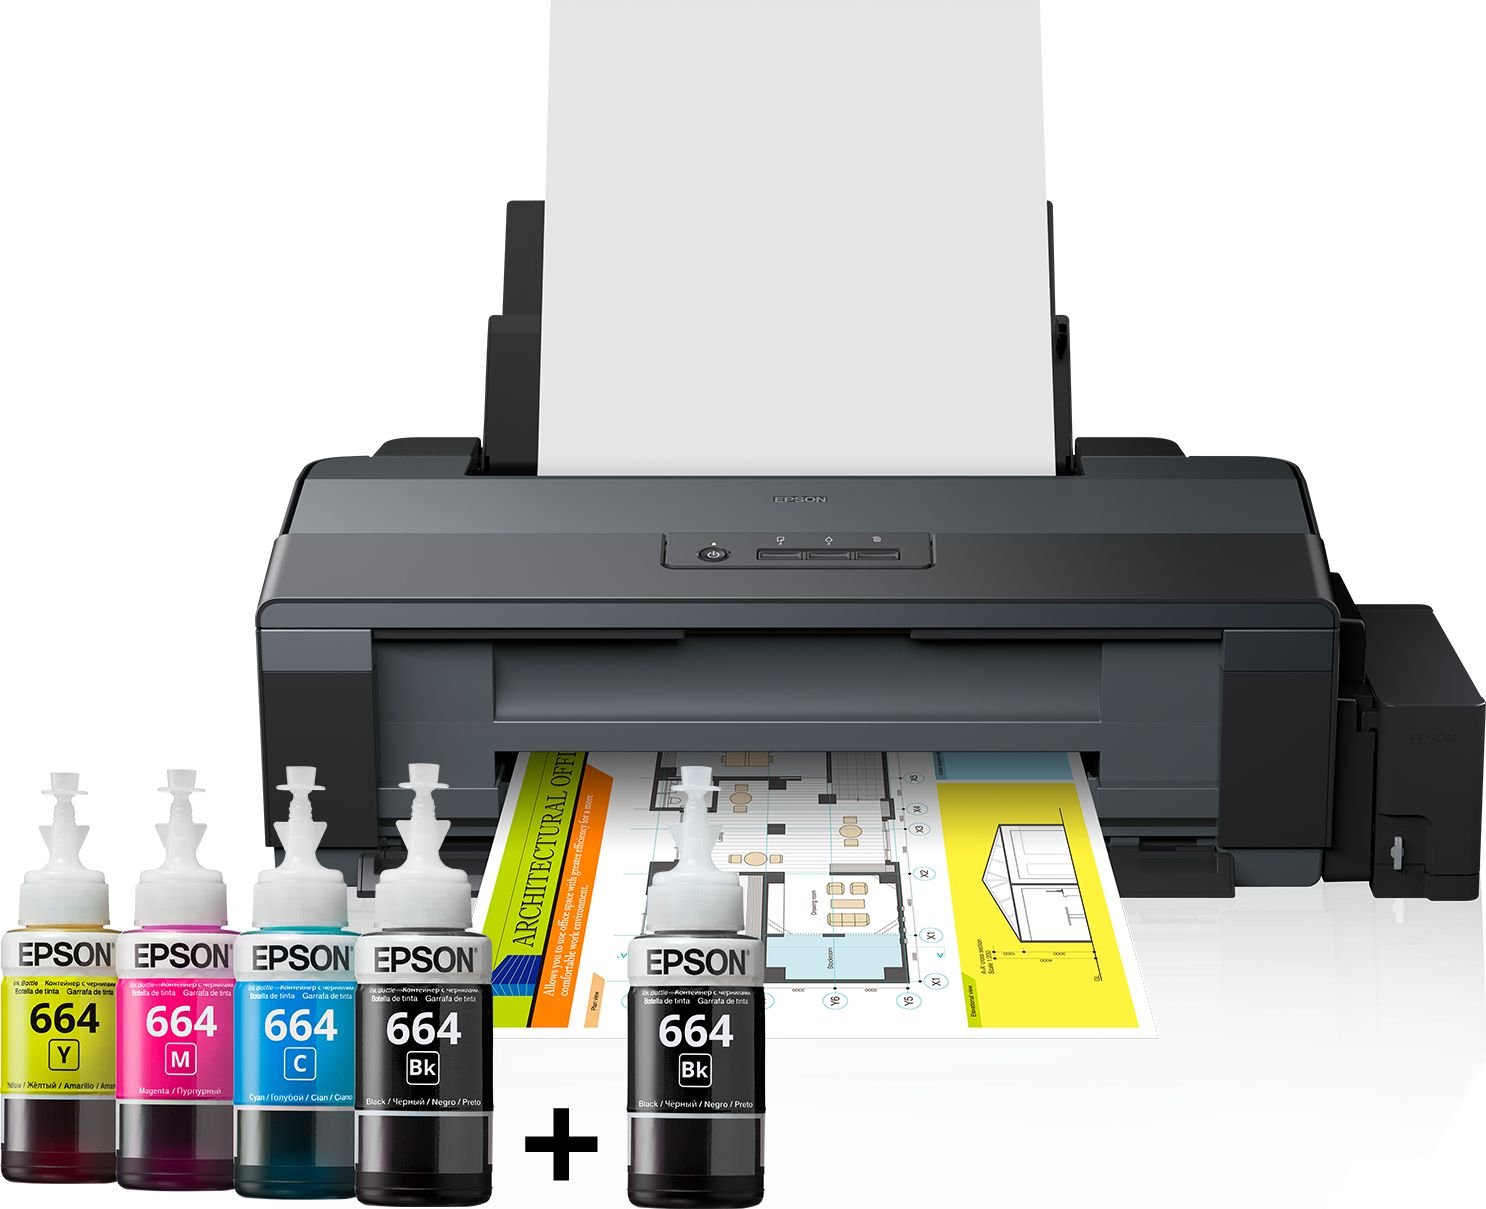 Imprimanta InkJet Color Epson ITS L1300, A3+